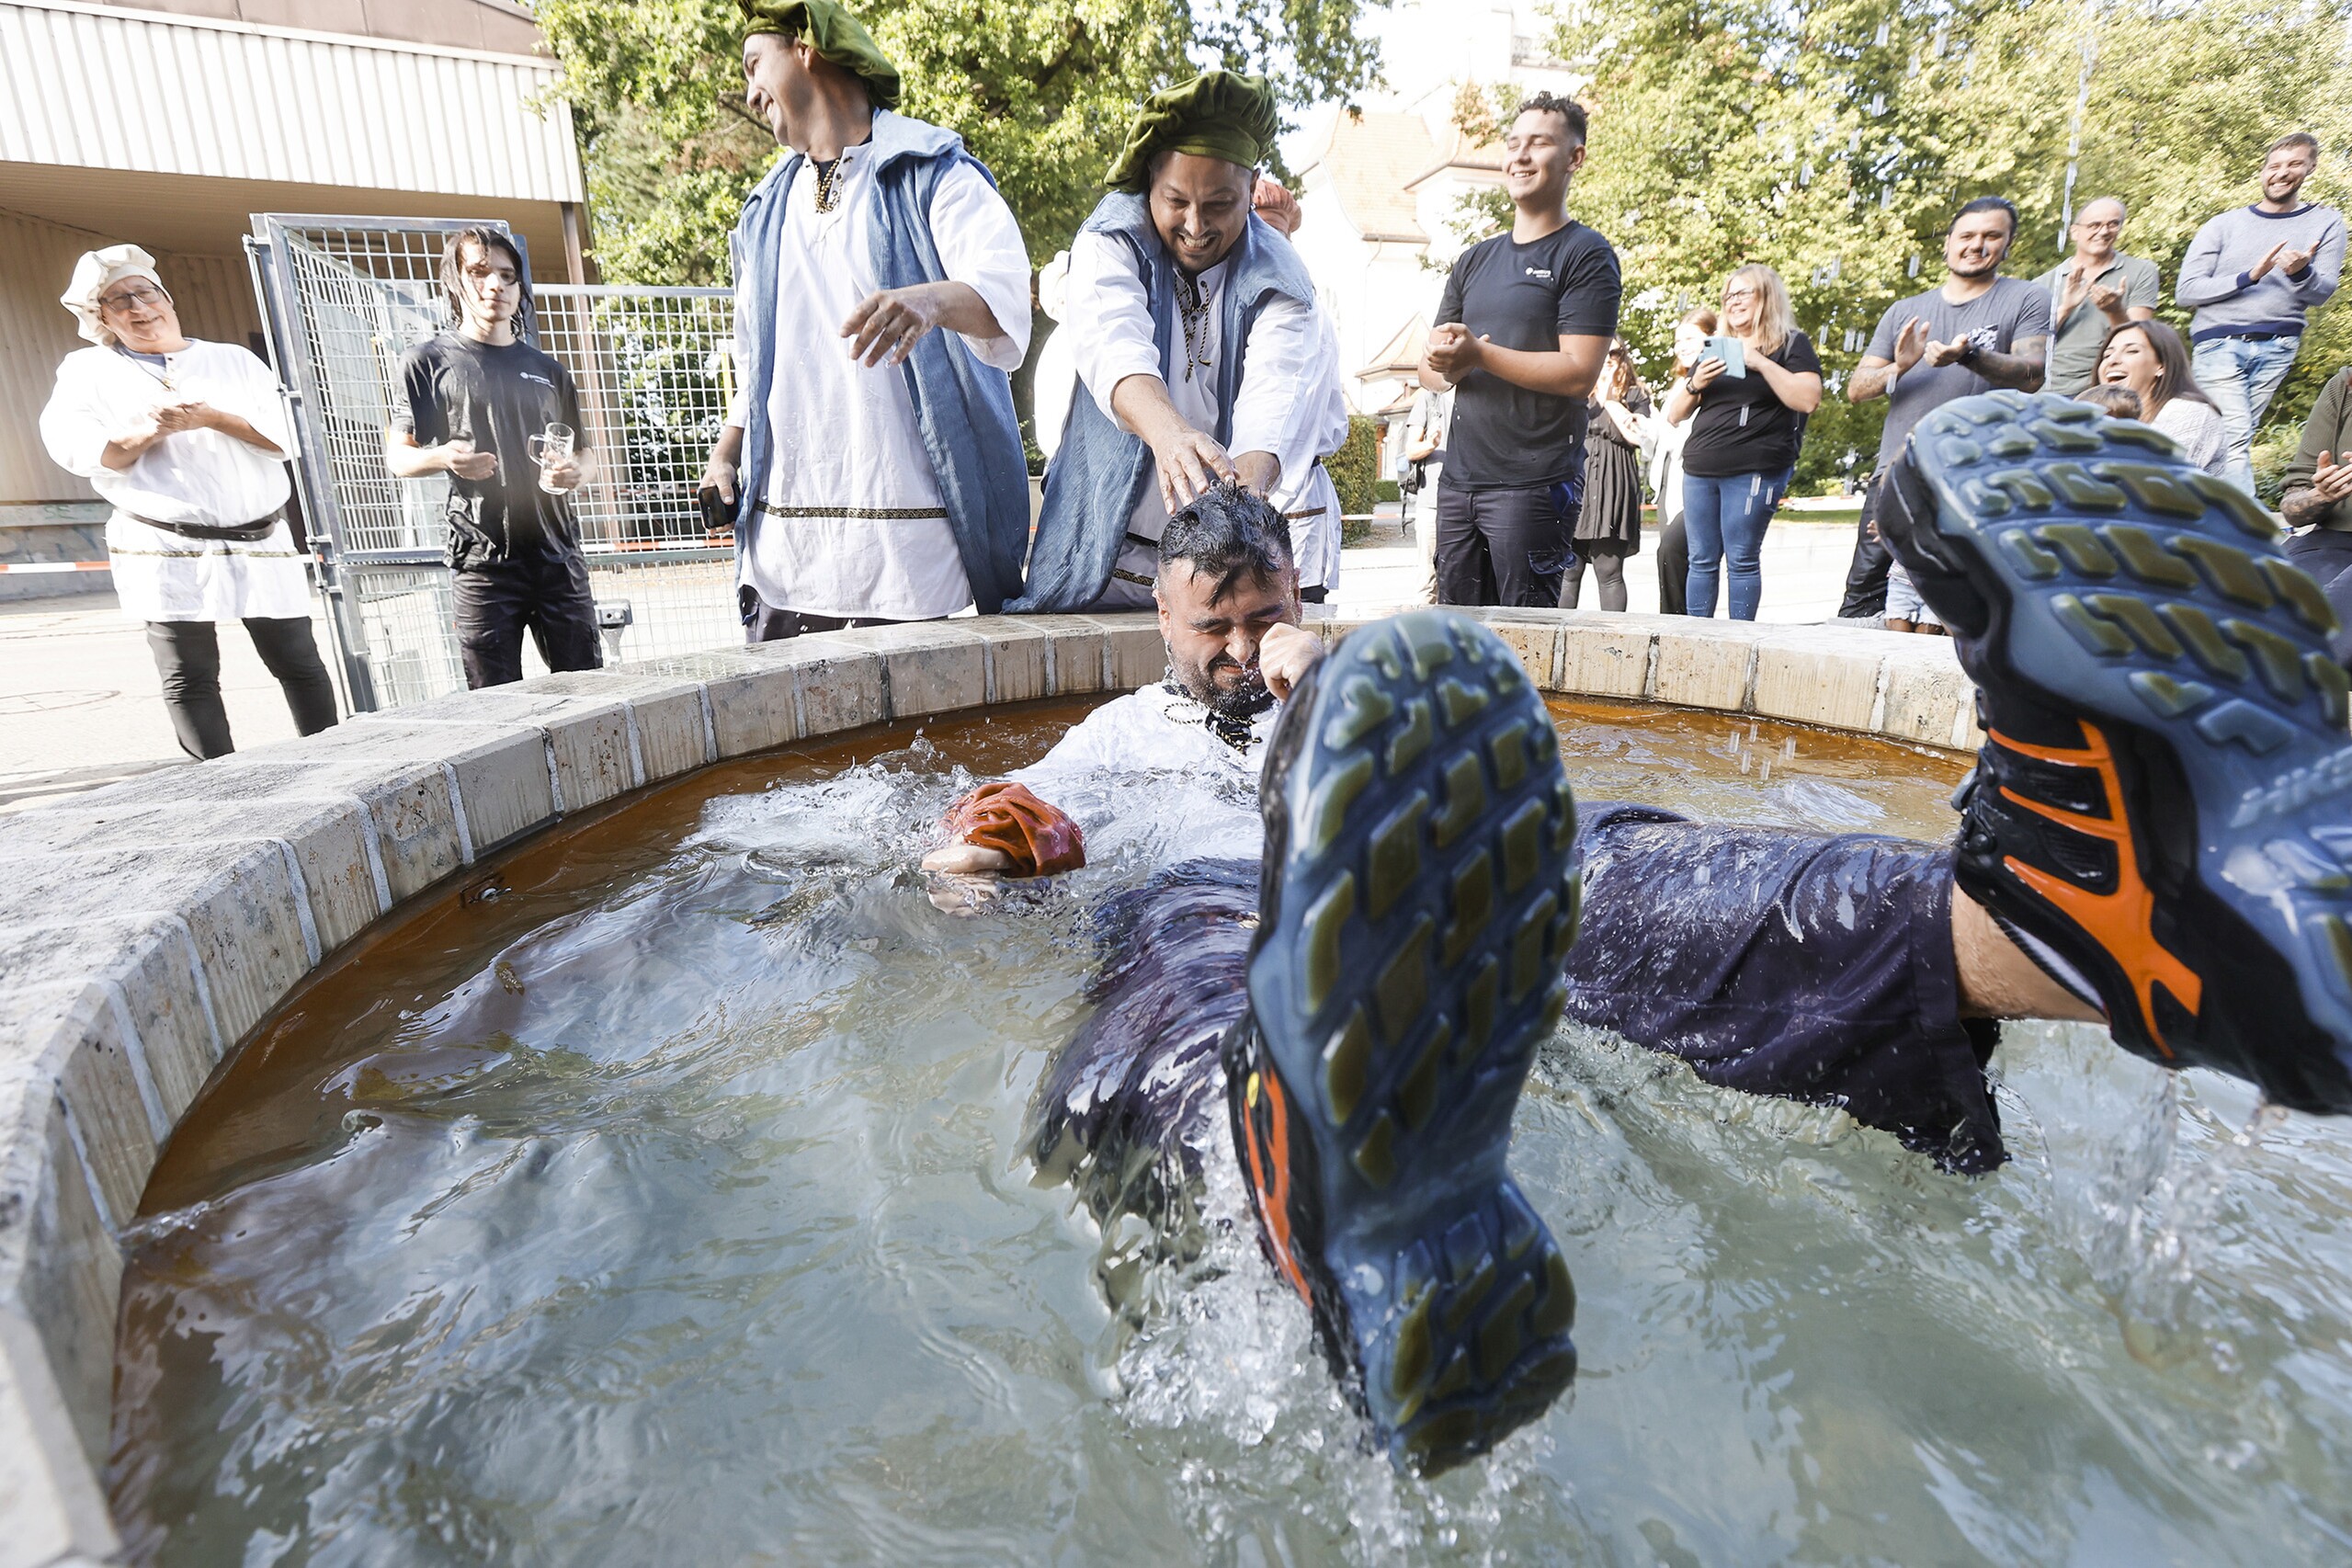 Bei einer Gautsch-Zeremonie wird ein Mann in einen mit Wasser gefüllten Brunnen getunkt.